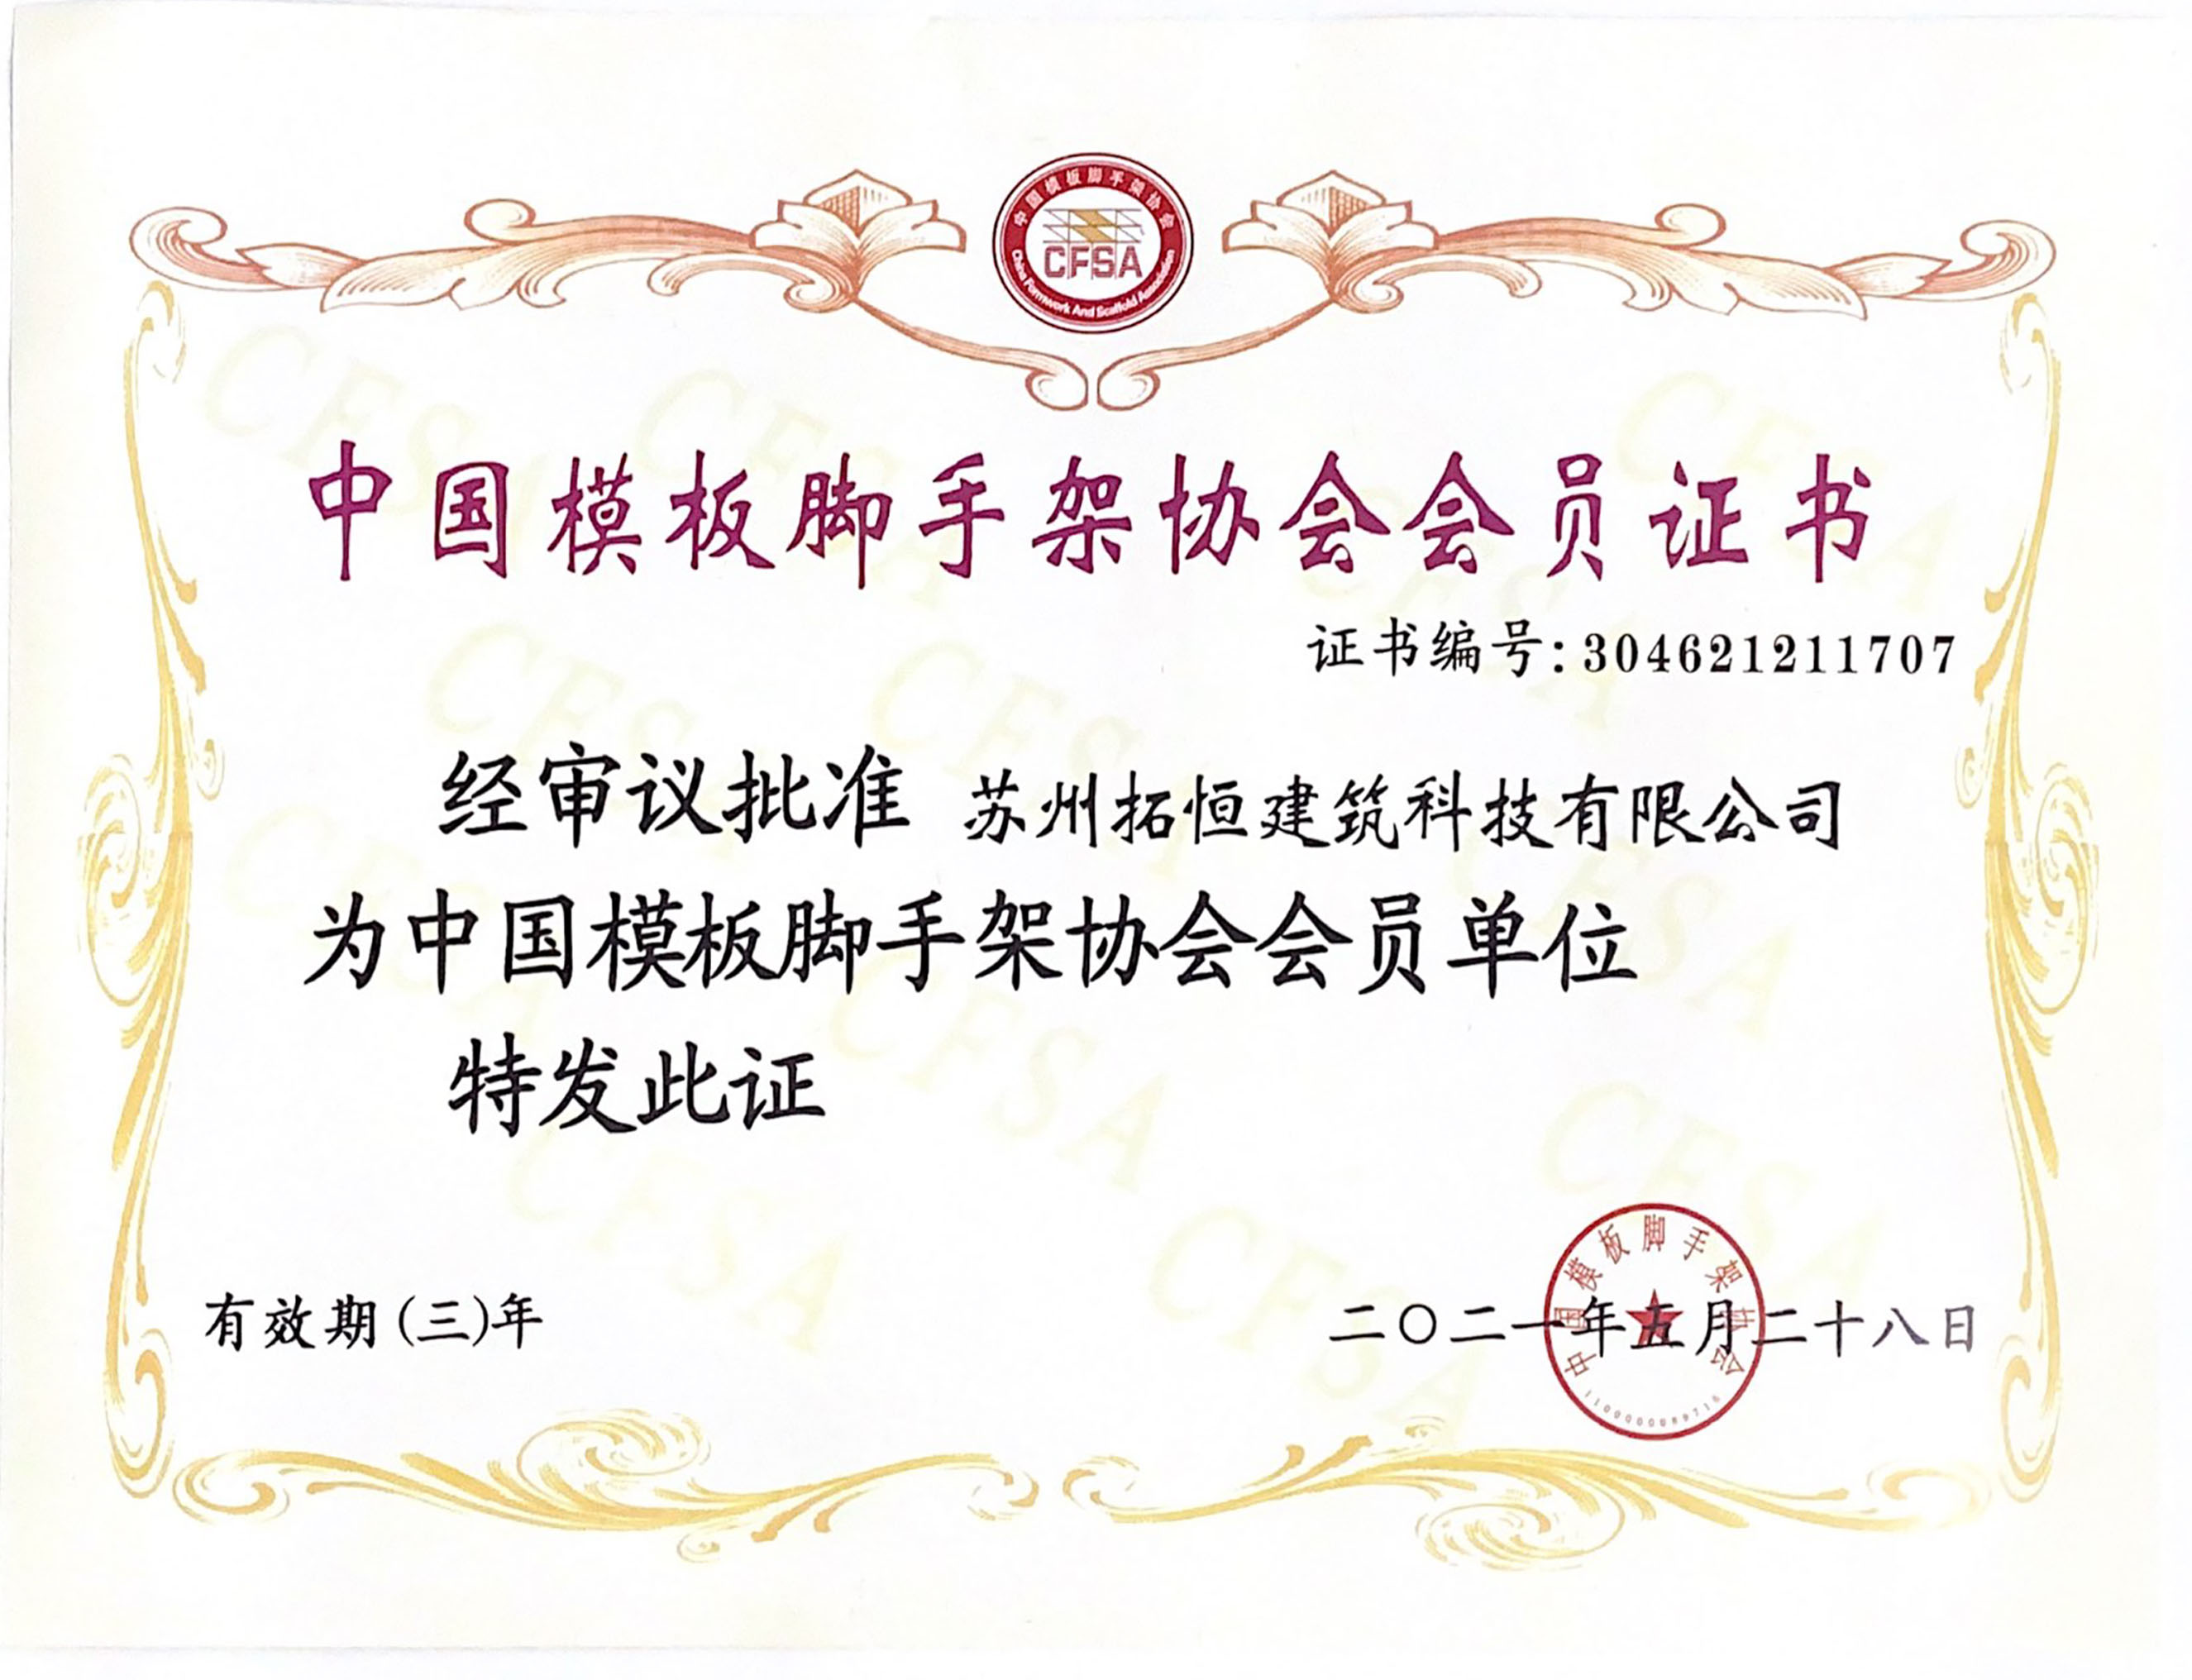 중국 거푸집 및 비계 협회의 회원 증명서